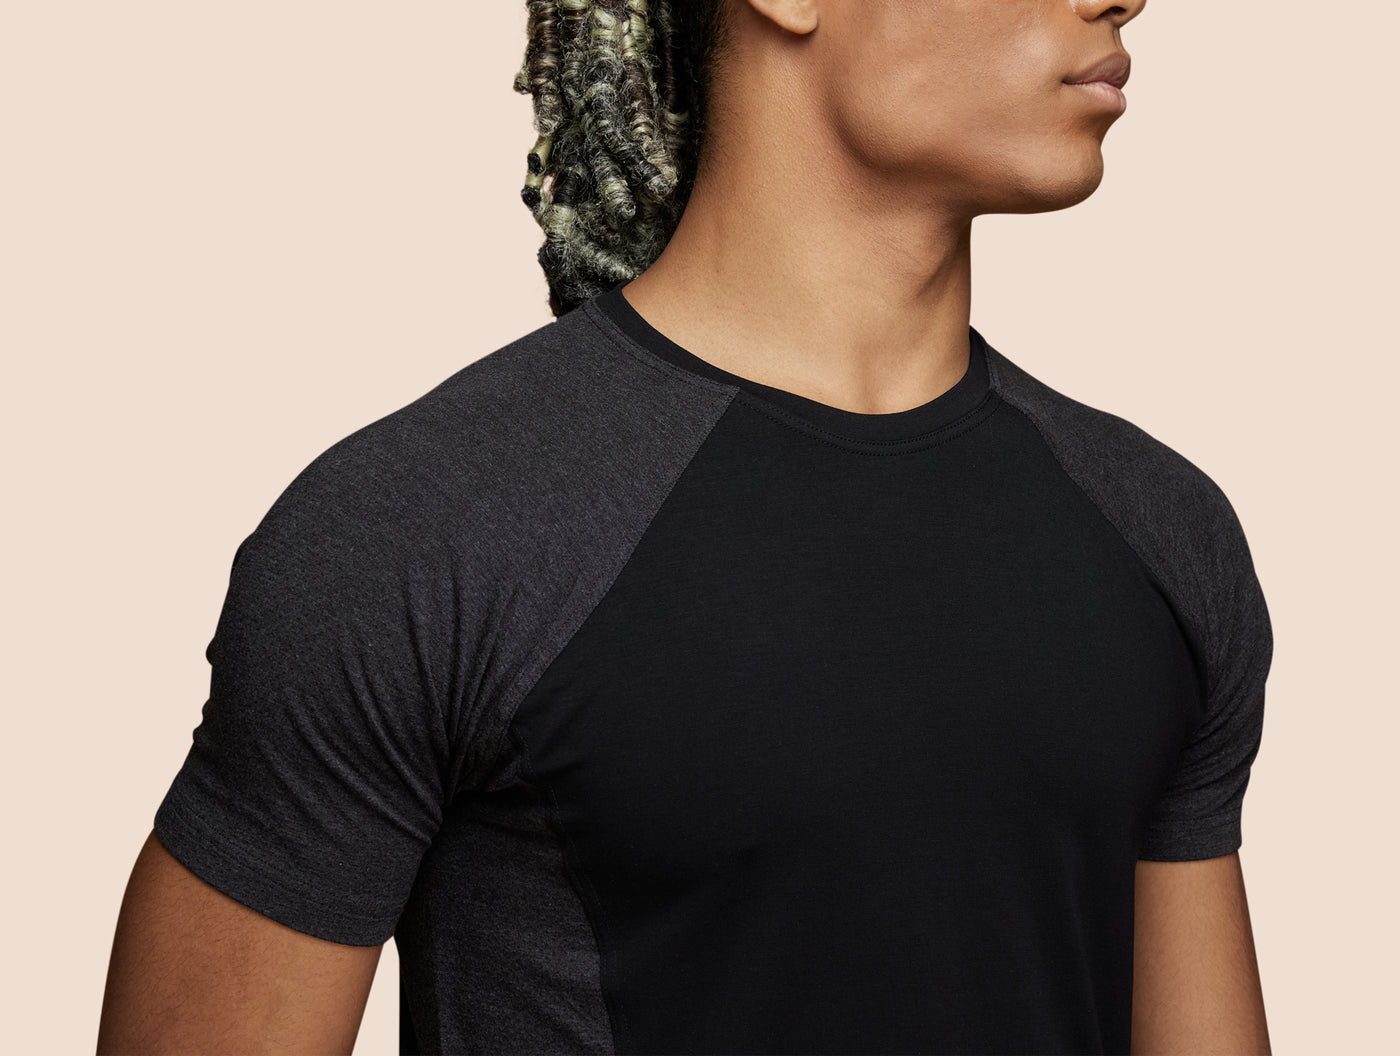 Pétrone T-shirt sport tencel noir - gris anthracite homme zoom#couleur_noir-gris-anthracite